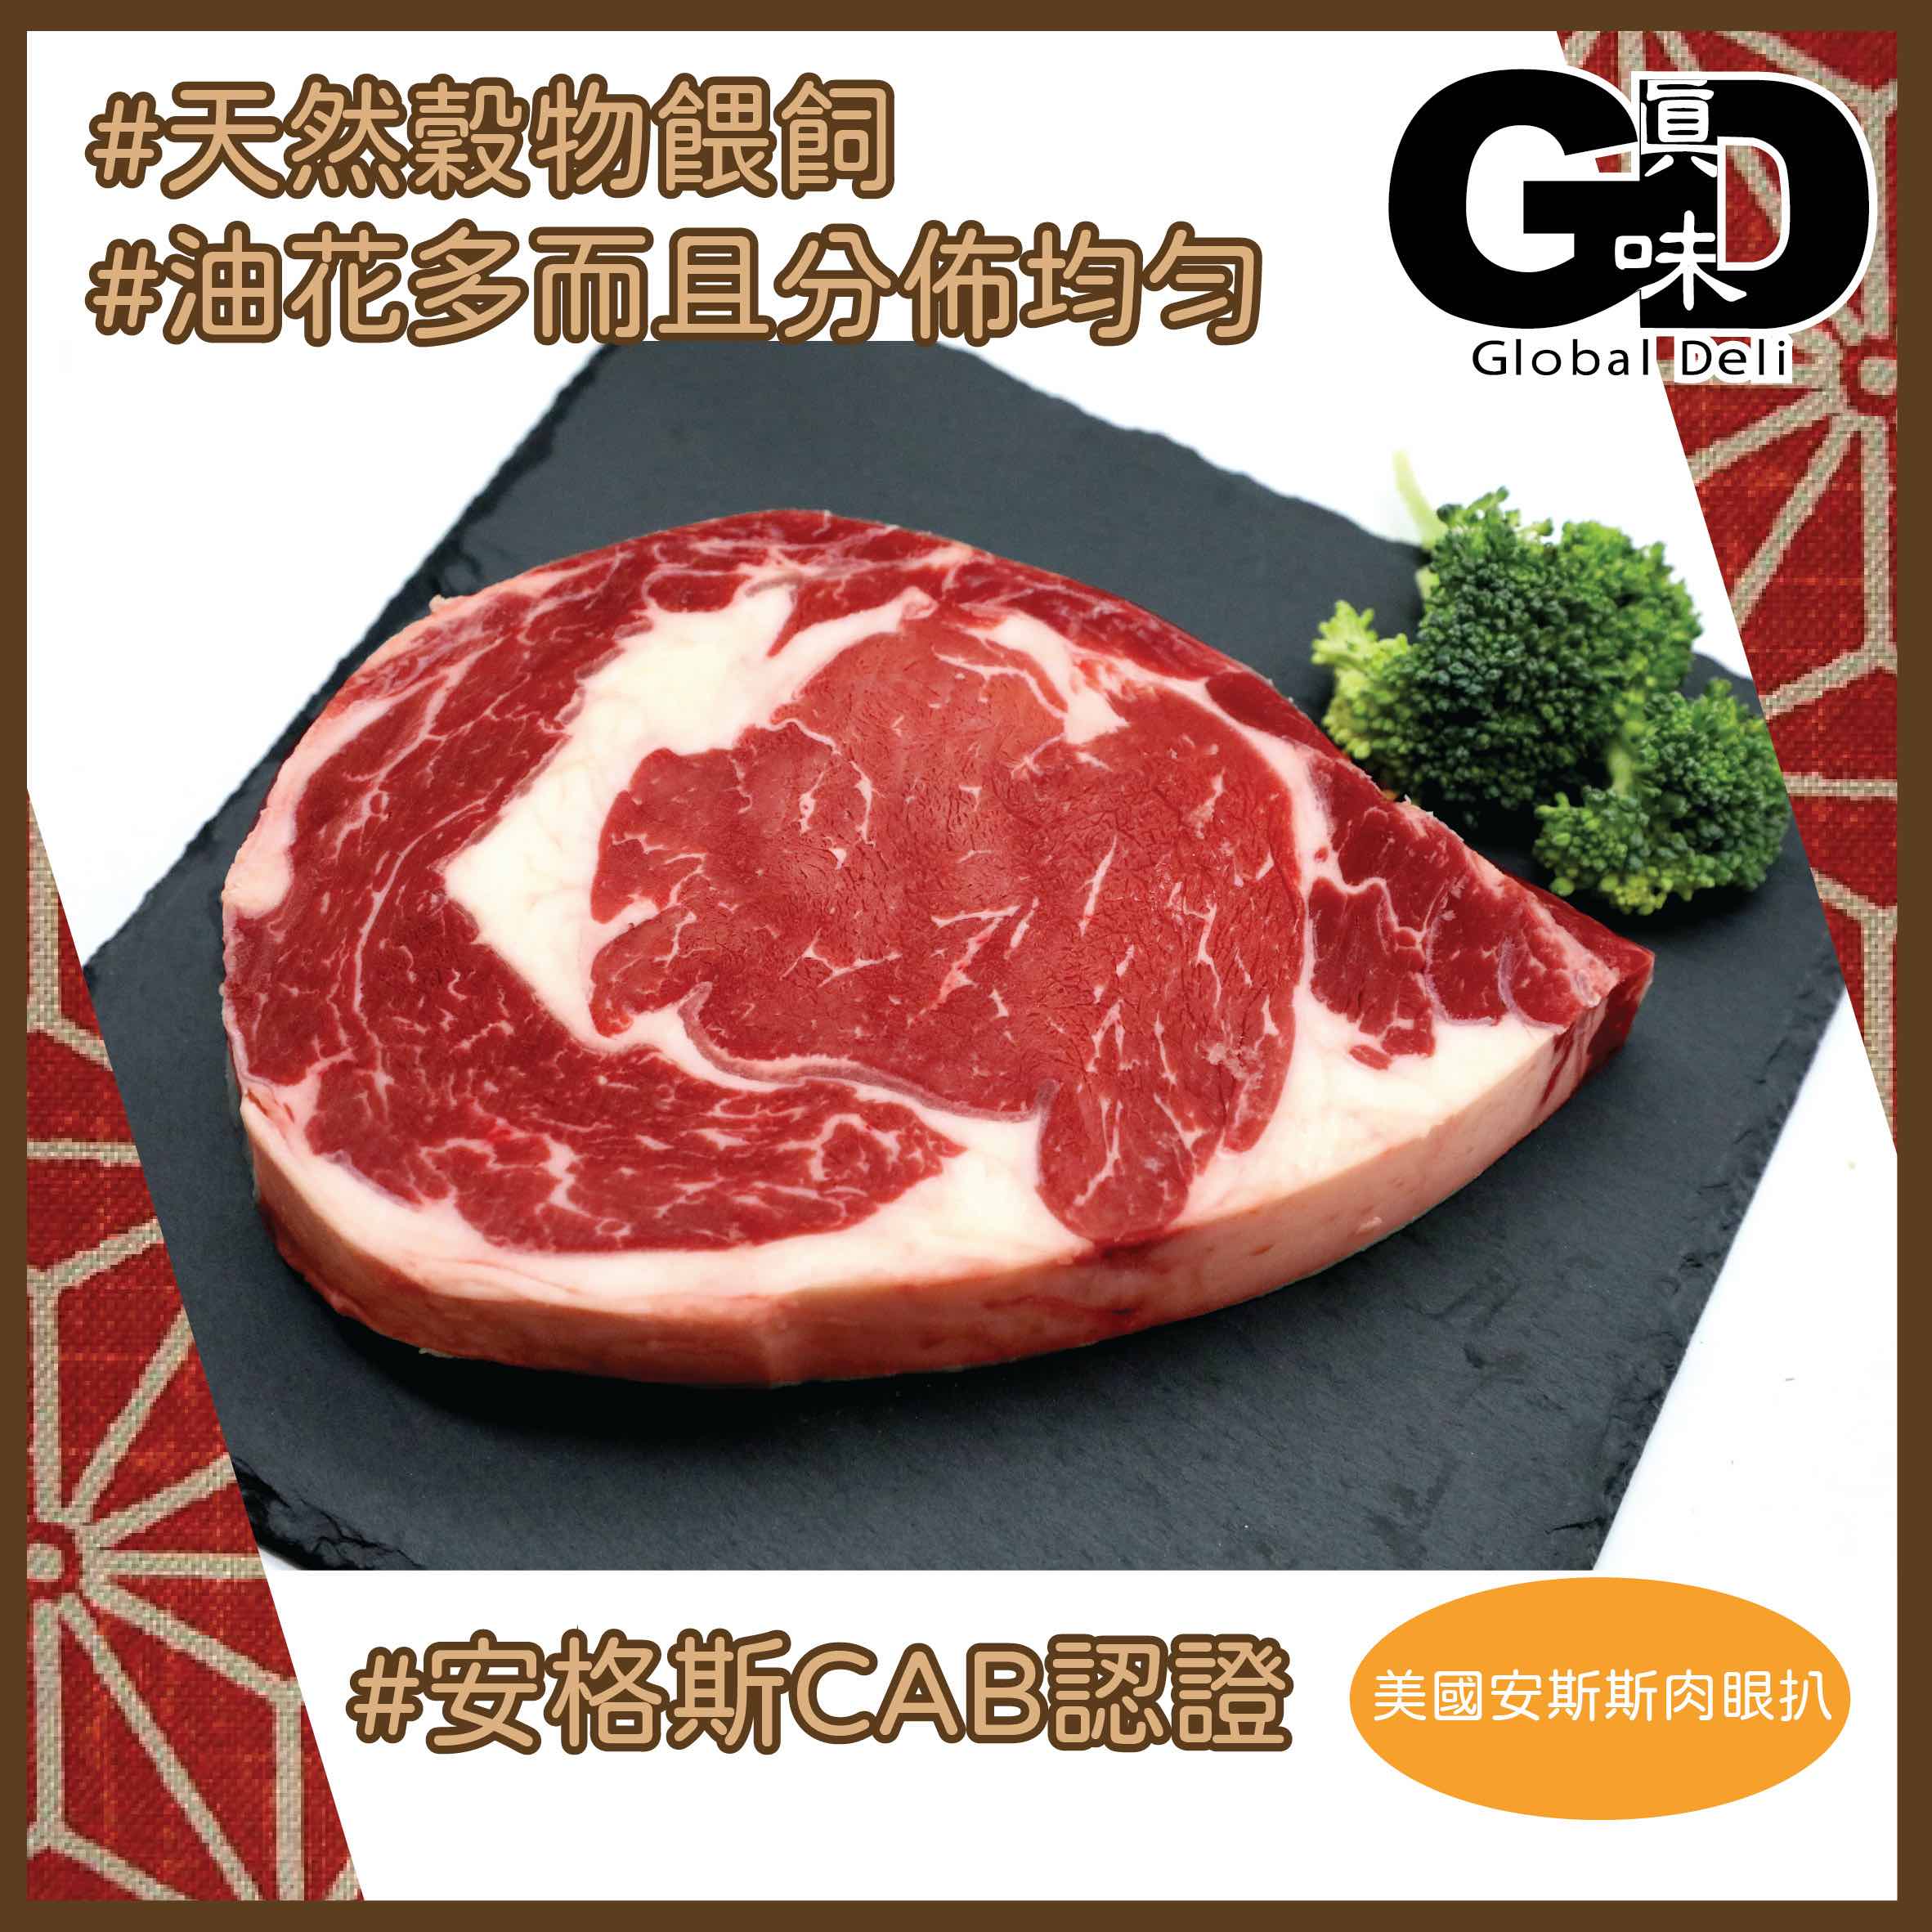 #5711 美國安格斯肉眼扒(約250g) US CAB Rib Eye Steak